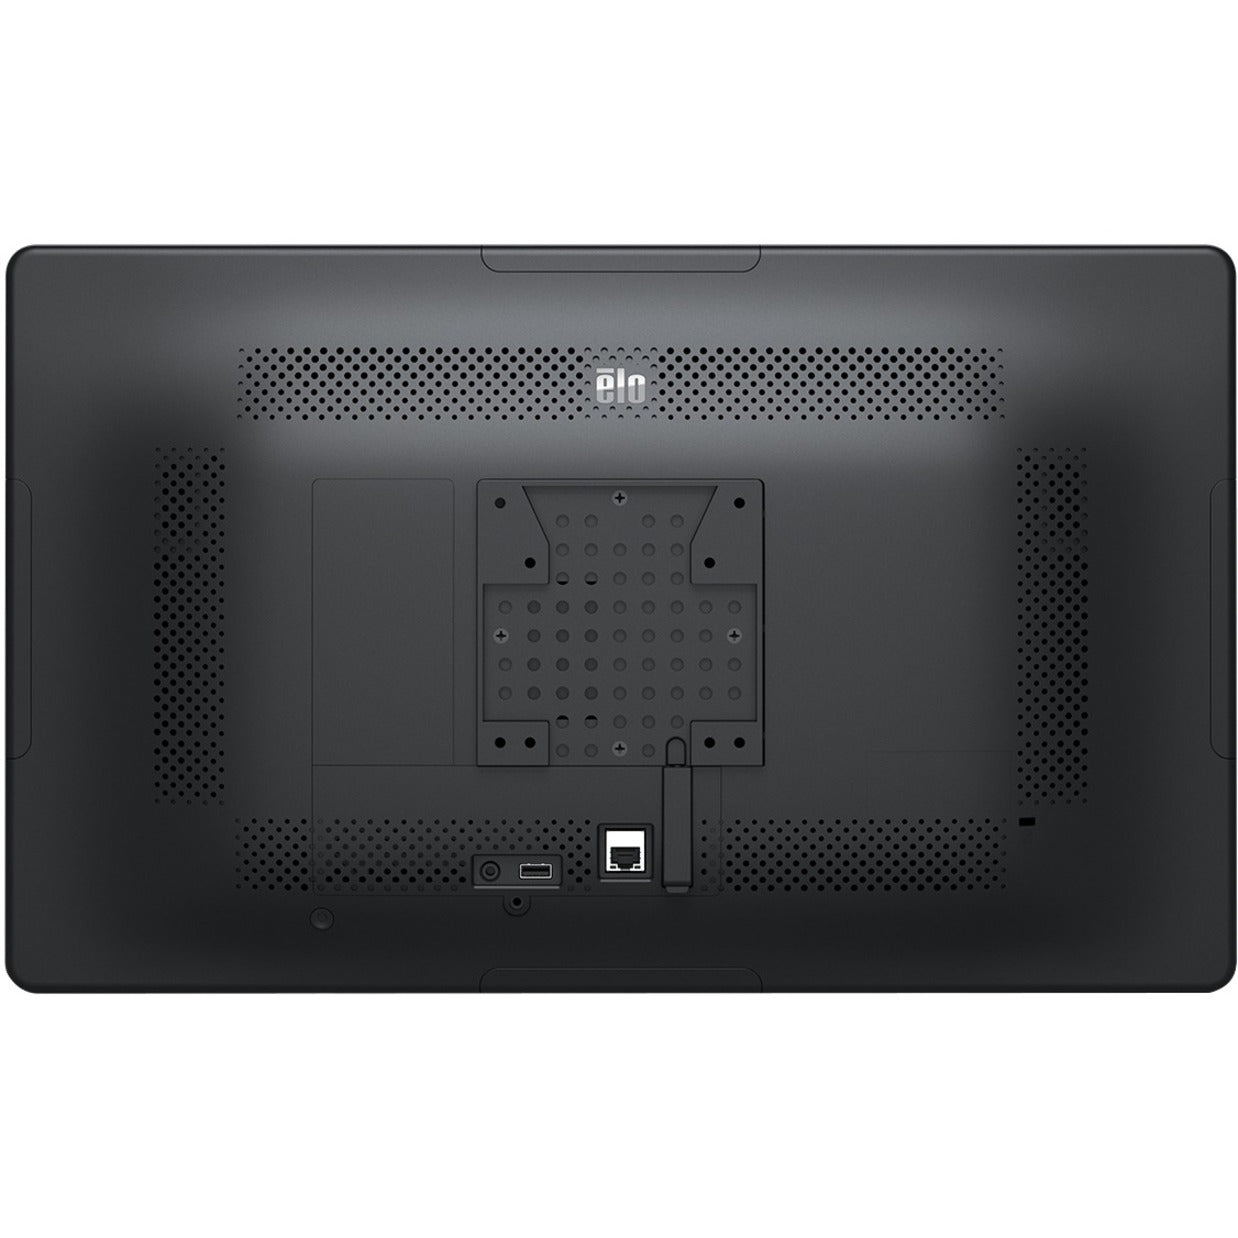 Elo E850591 i3 I-Series POS Terminal, 21.5" Touchscreen, 8GB RAM, 128GB SSD, Windows 10 IoT Enterprise